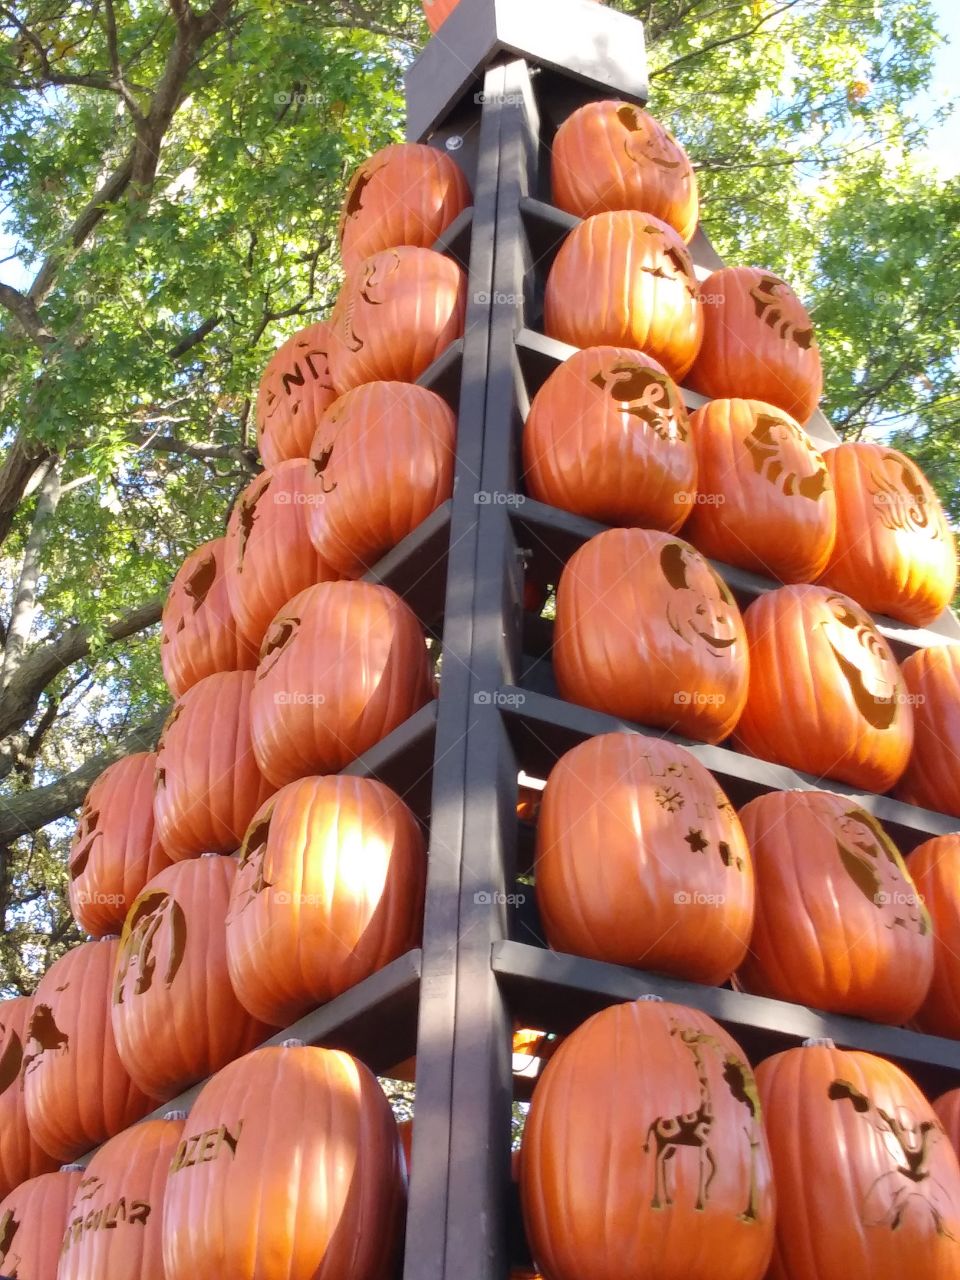 Pumpkins up high